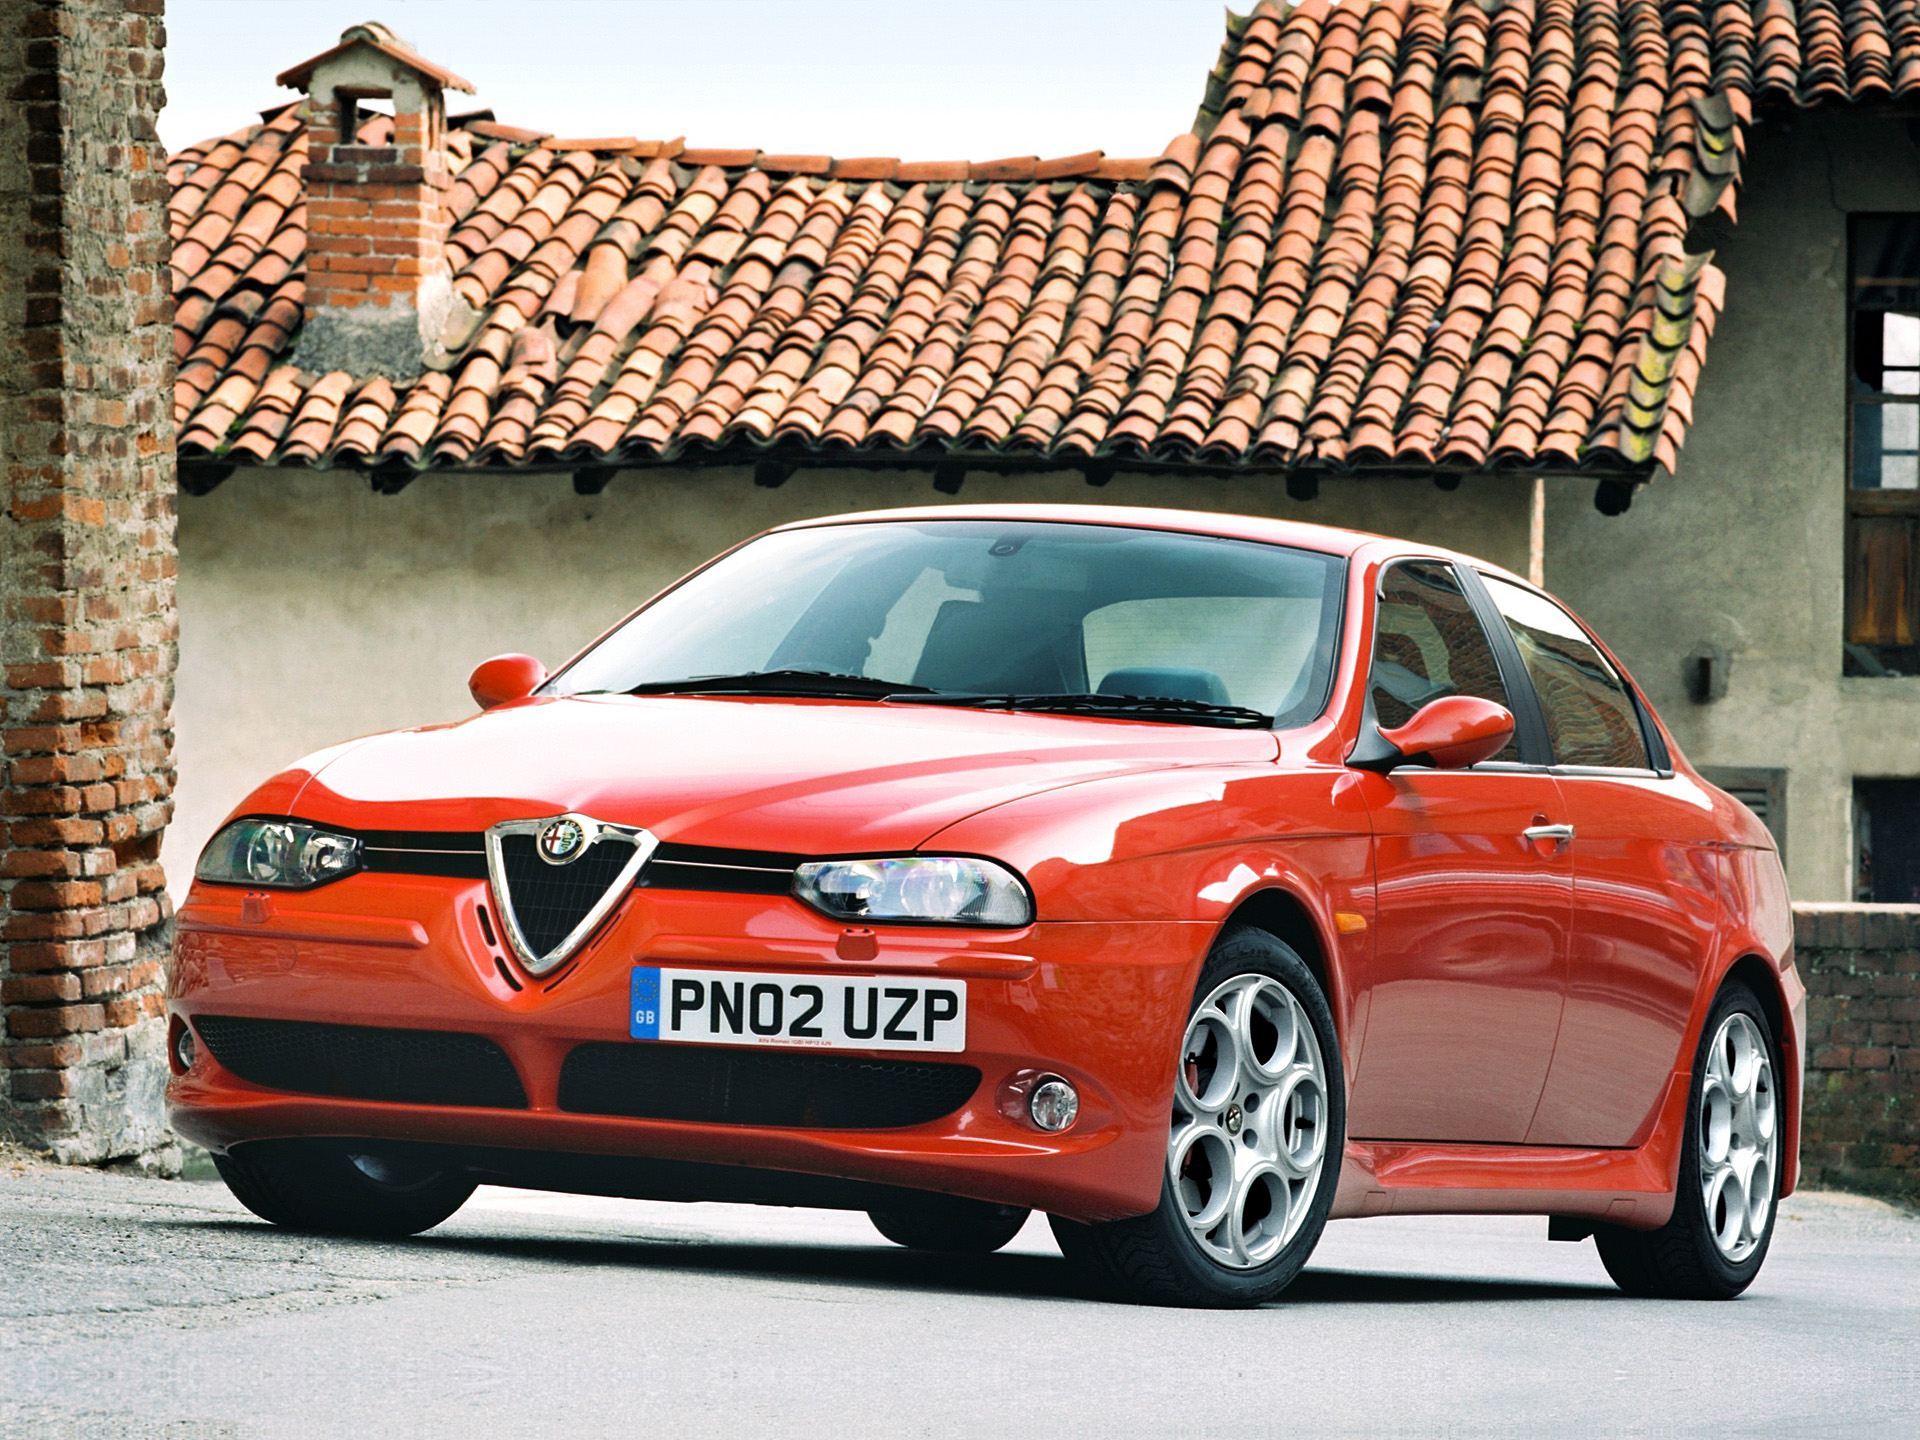 2002 Alfa Romeo 156 GTA